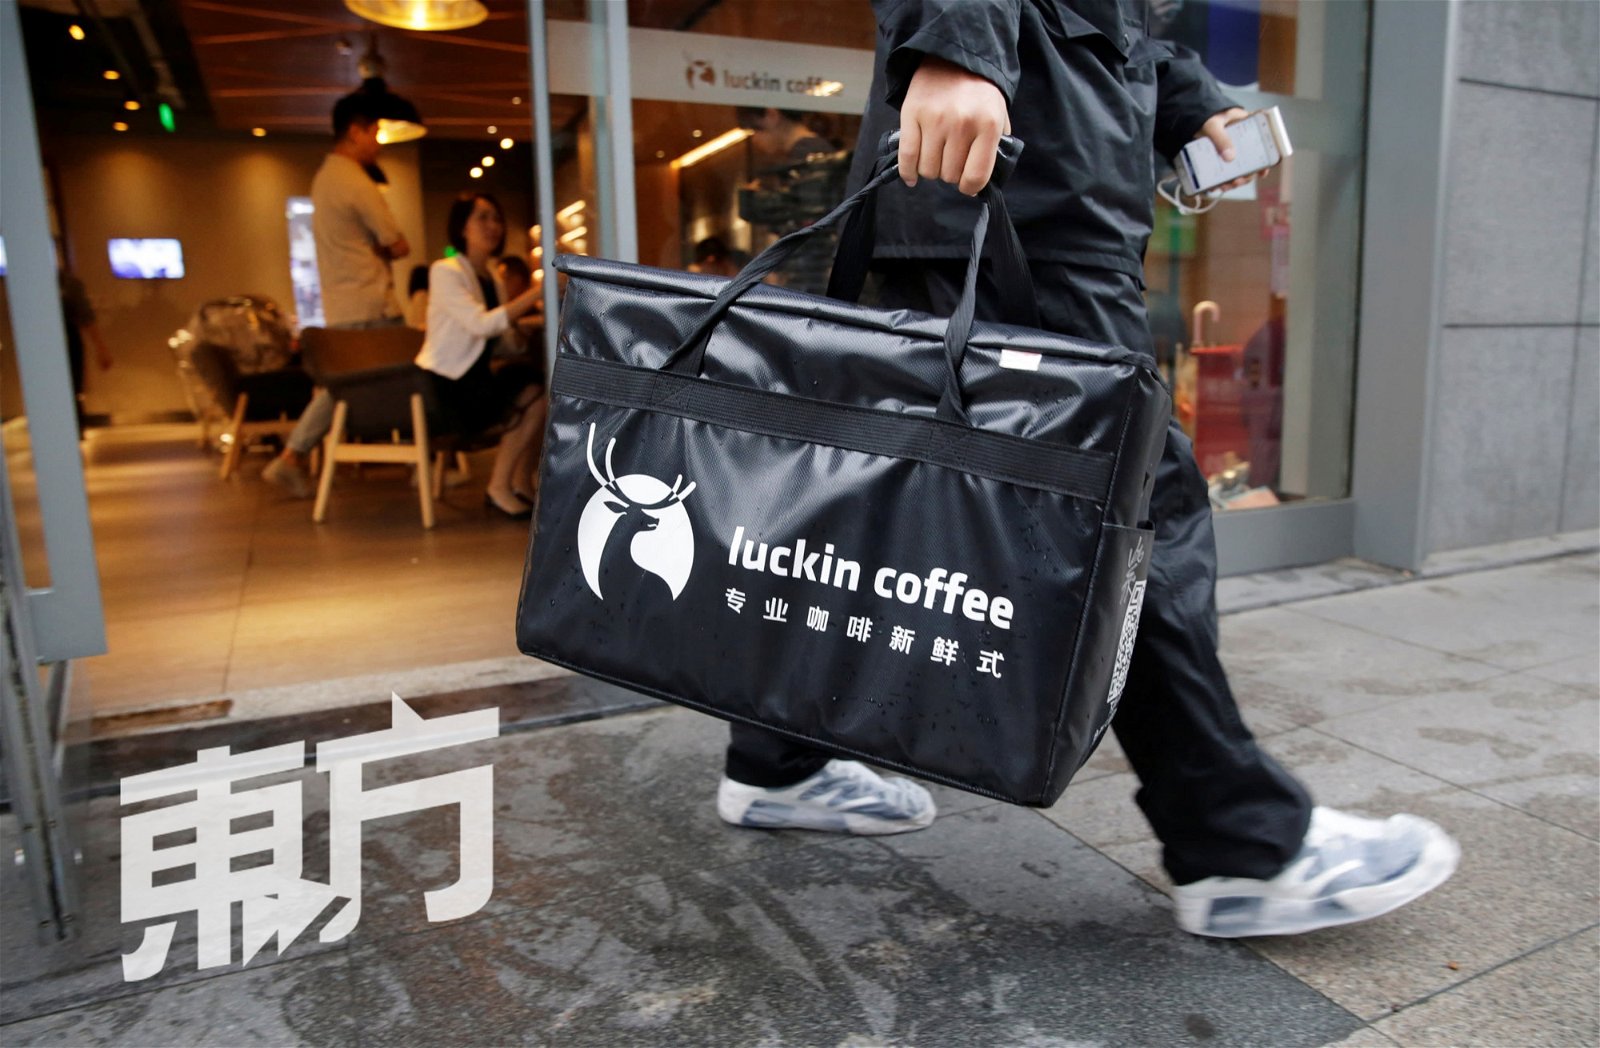 瑞幸咖啡（Luckin coffee）提供的数据显示，该品牌在不到一年内吸引了1200万消费者，售出咖啡总数超过8500万杯。分店方面，知名连锁咖啡星巴克（Starbucks）用了20年的时间在中国开了逾3000间门店，而瑞幸只用了一年就开了2000间，目前更冲破3000家门店。